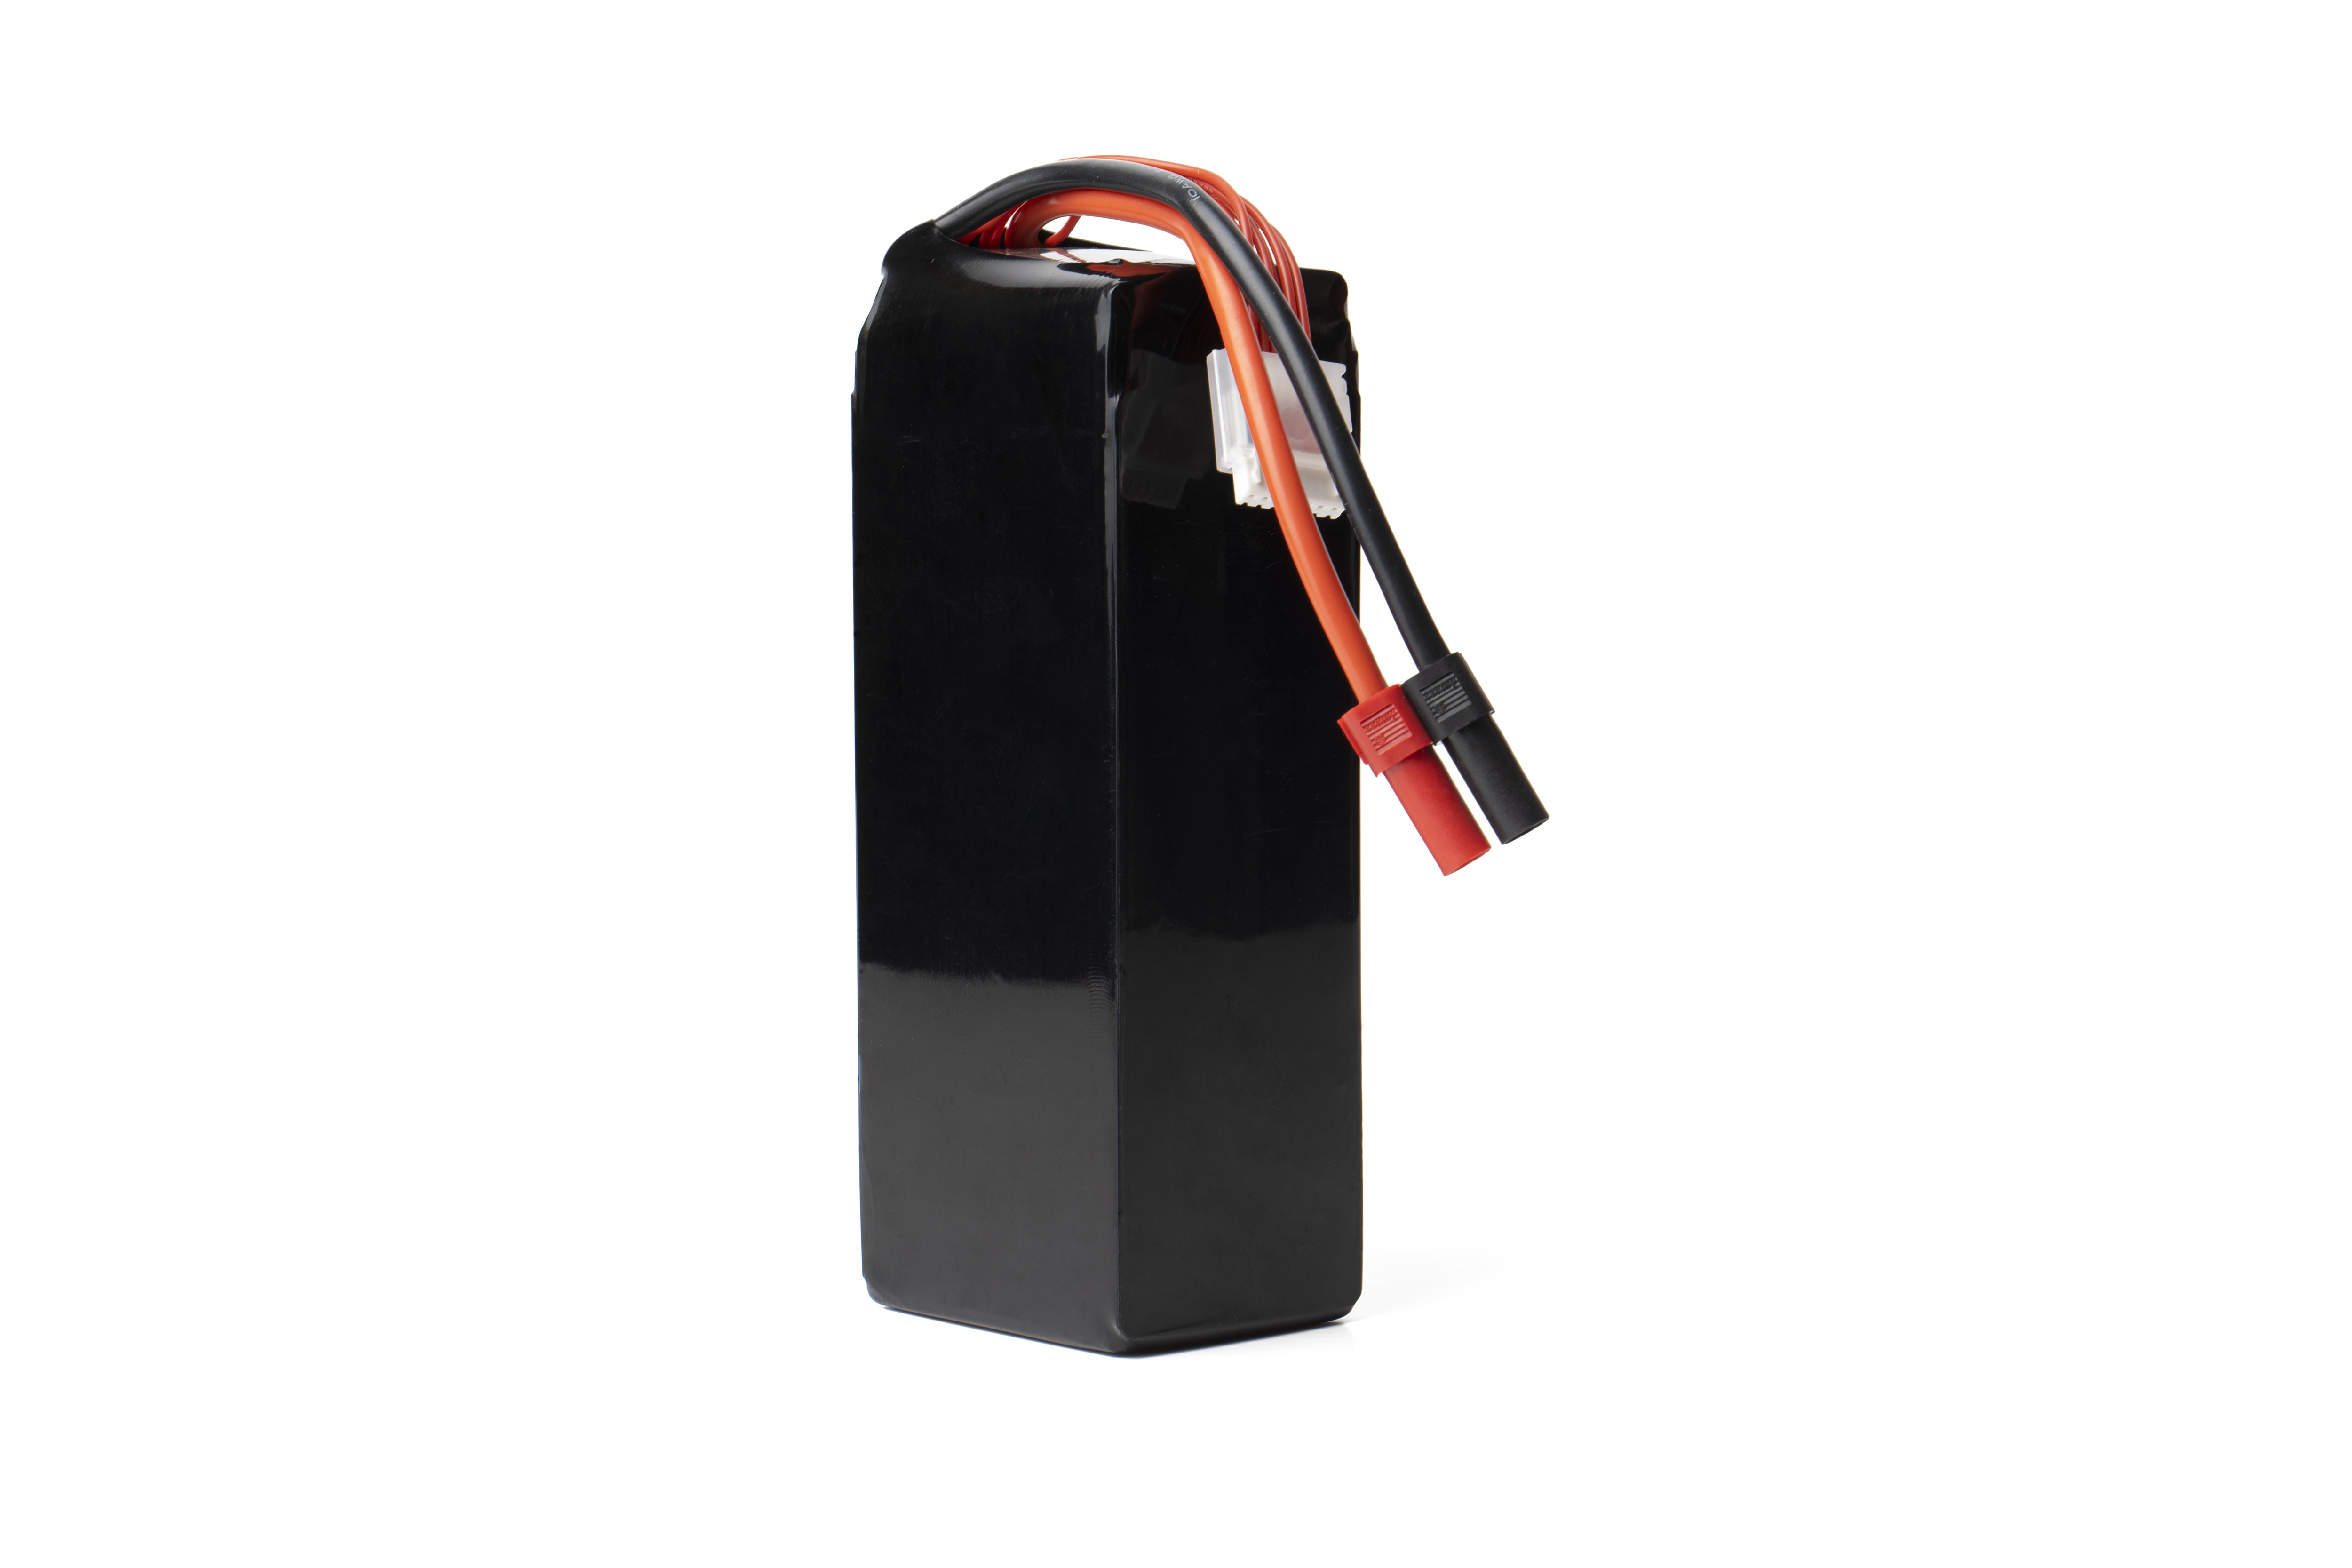 KopterMax LiPo battery - 6s 10000mAh 30-50C